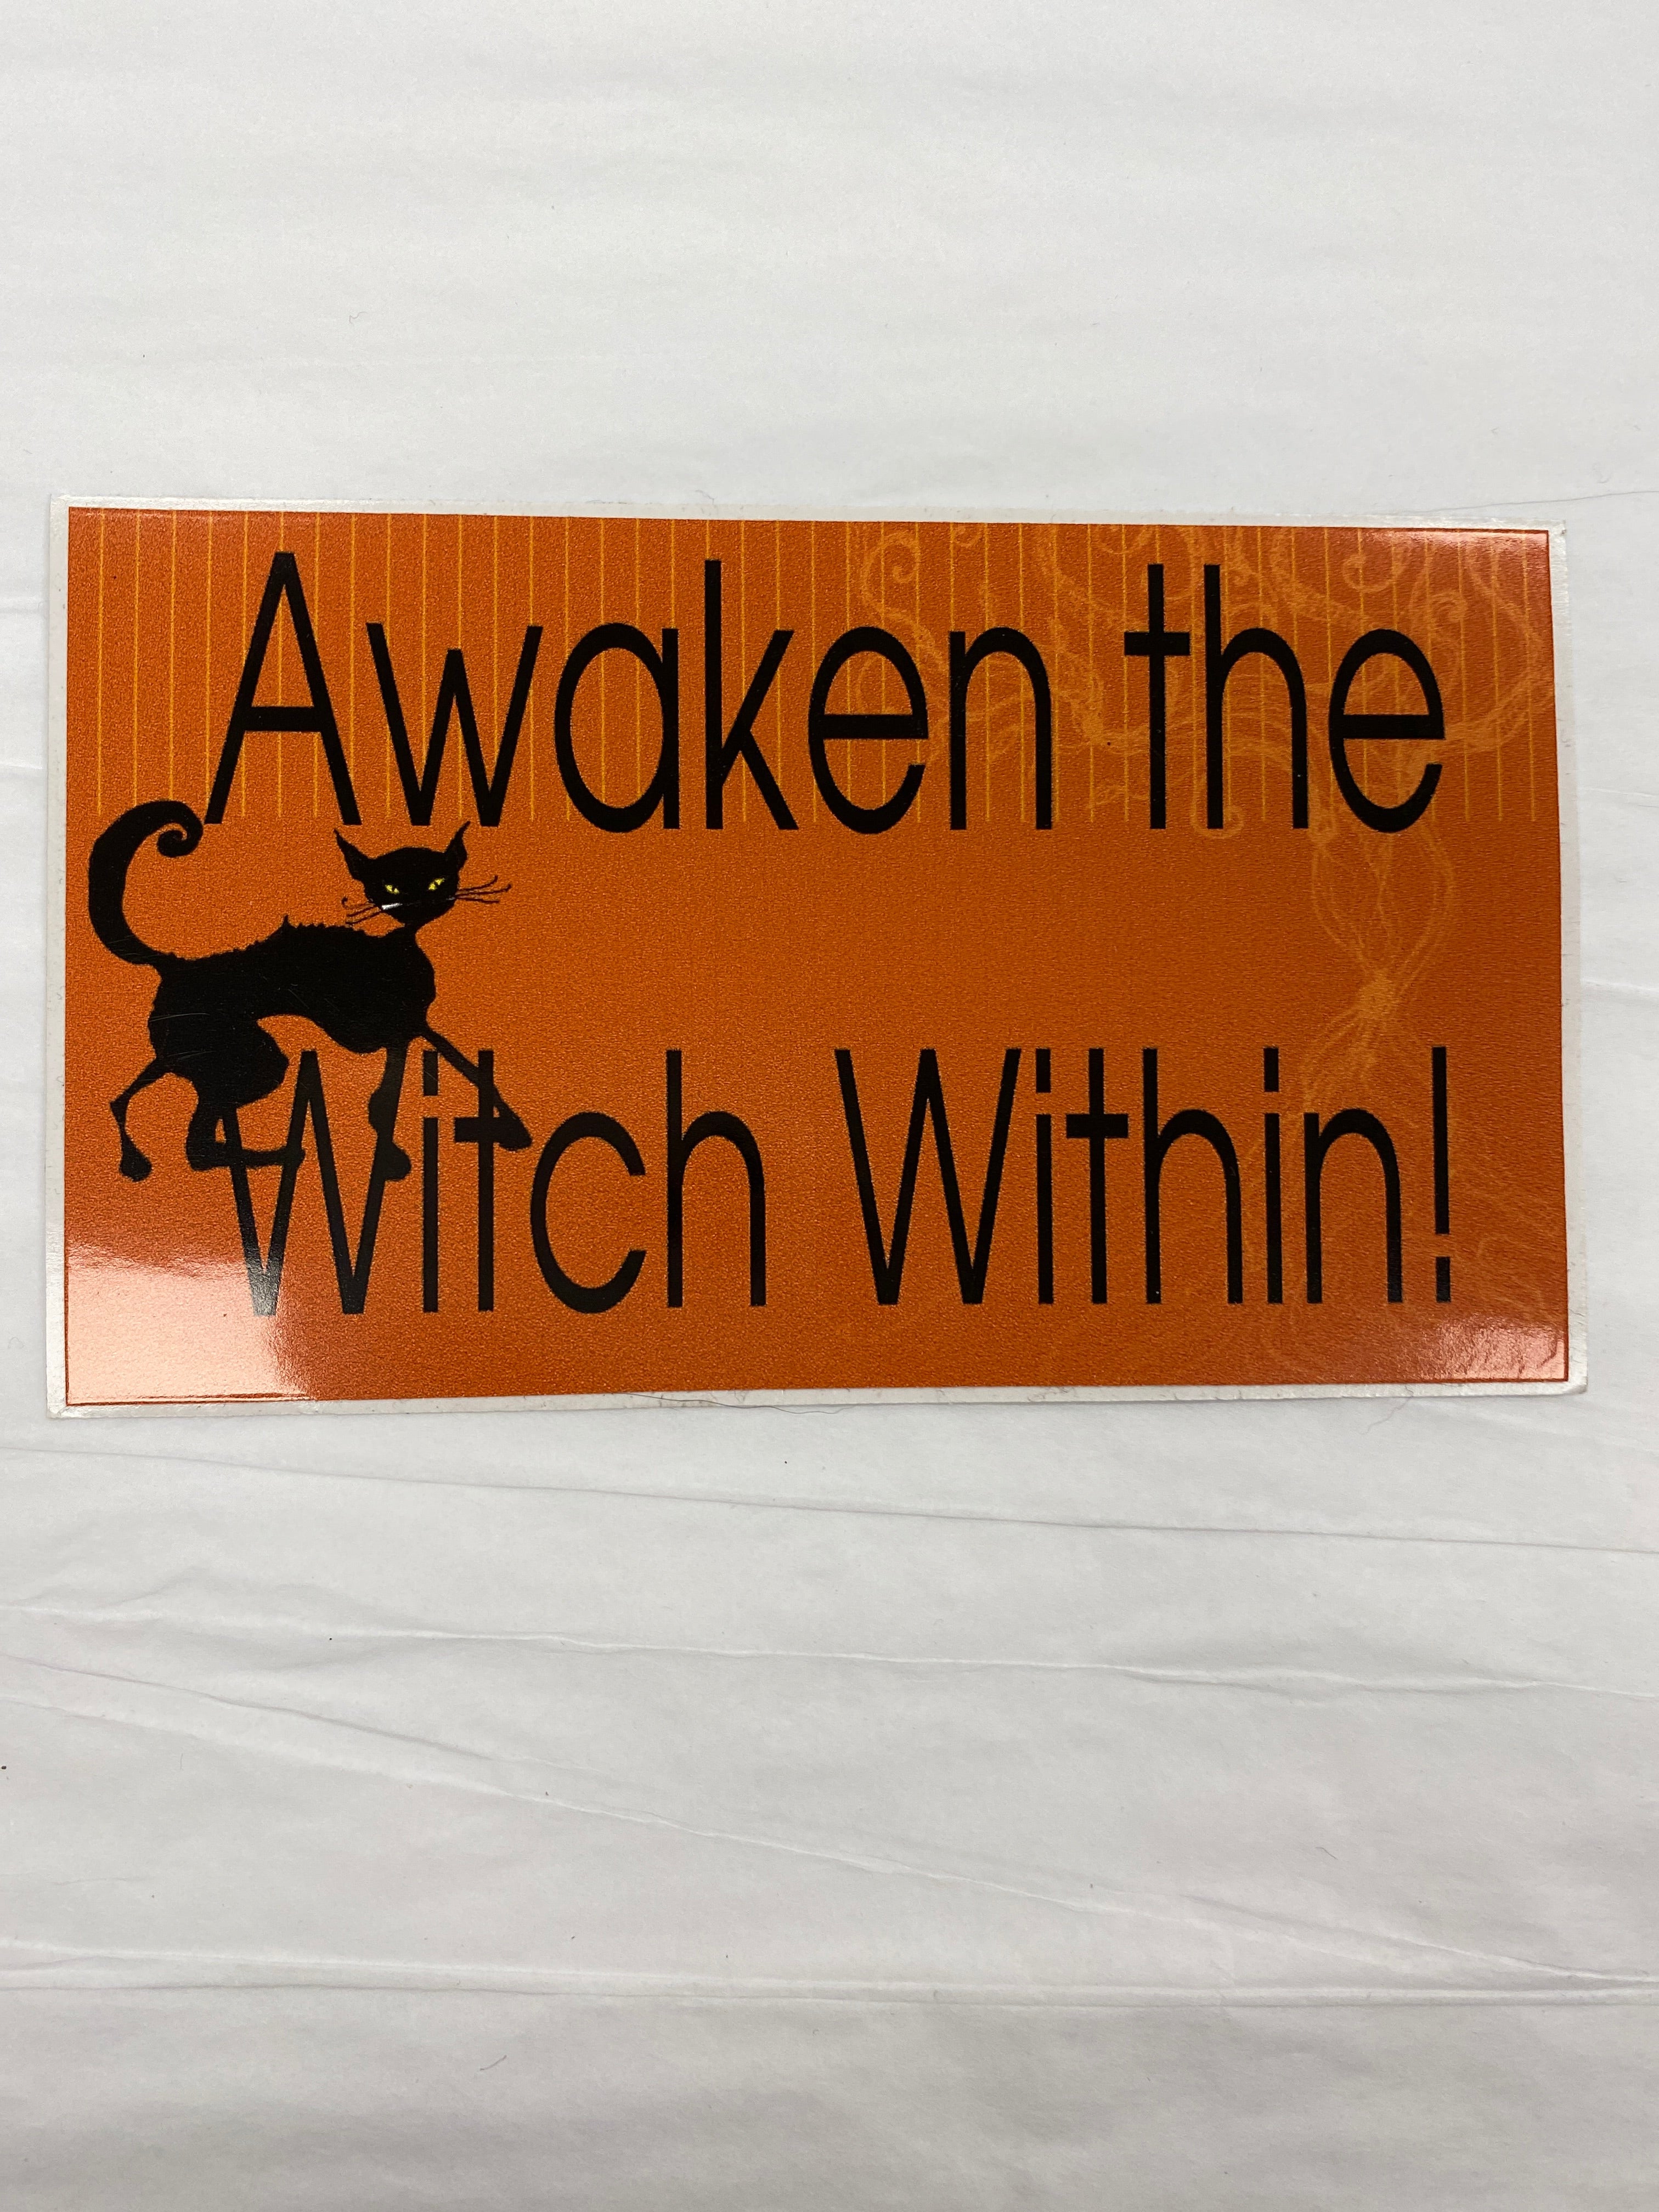 Awaken the Witch Within! Sticker